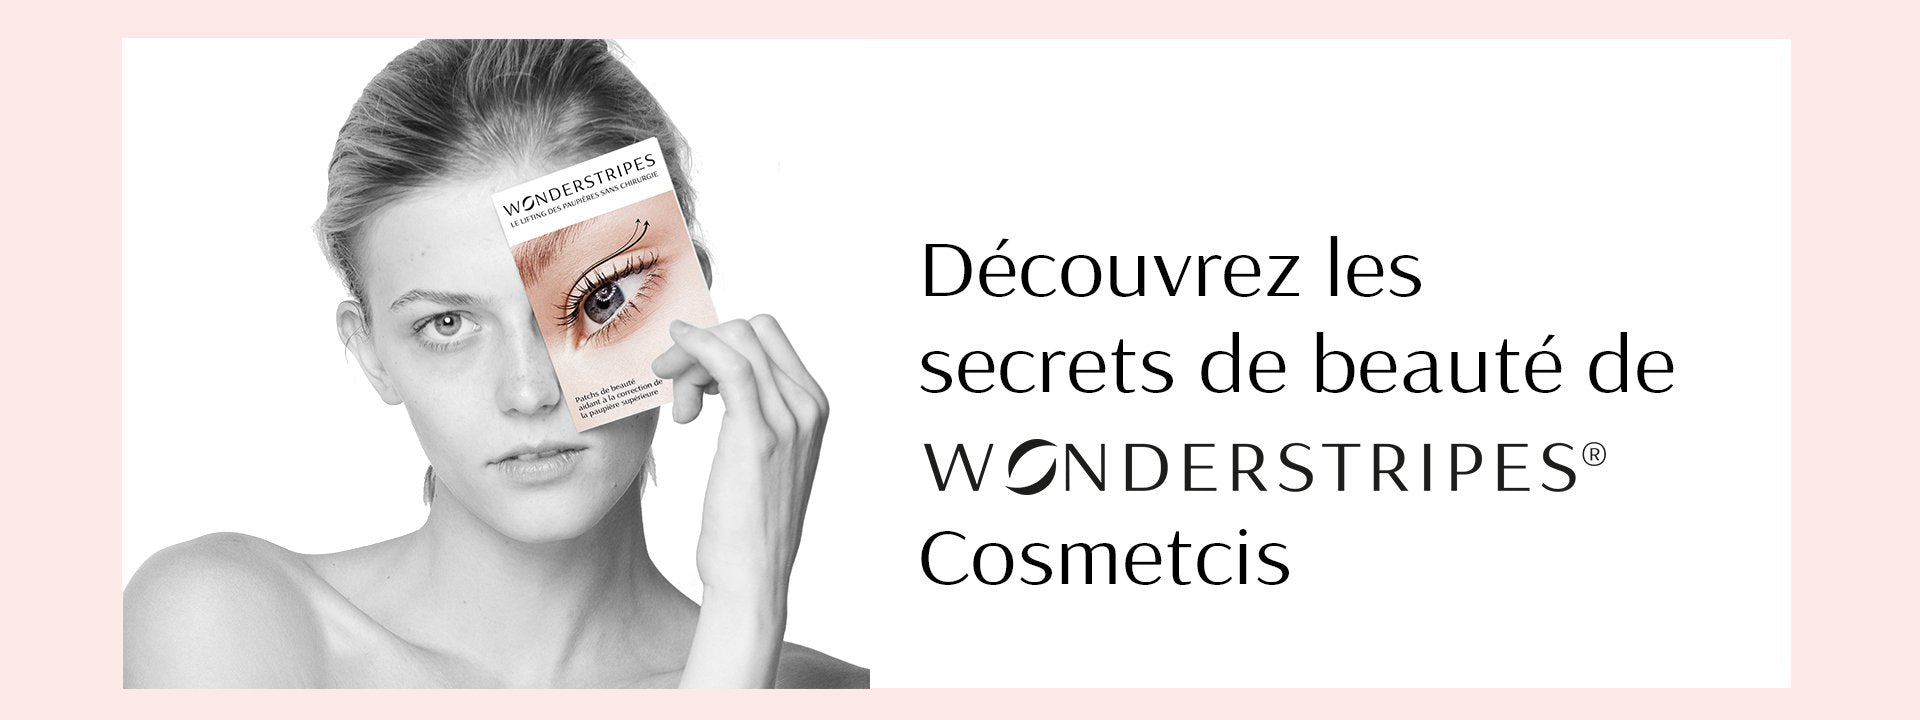 Découvrez le beauty secrets de WONDERSTRIPES Cosmetics